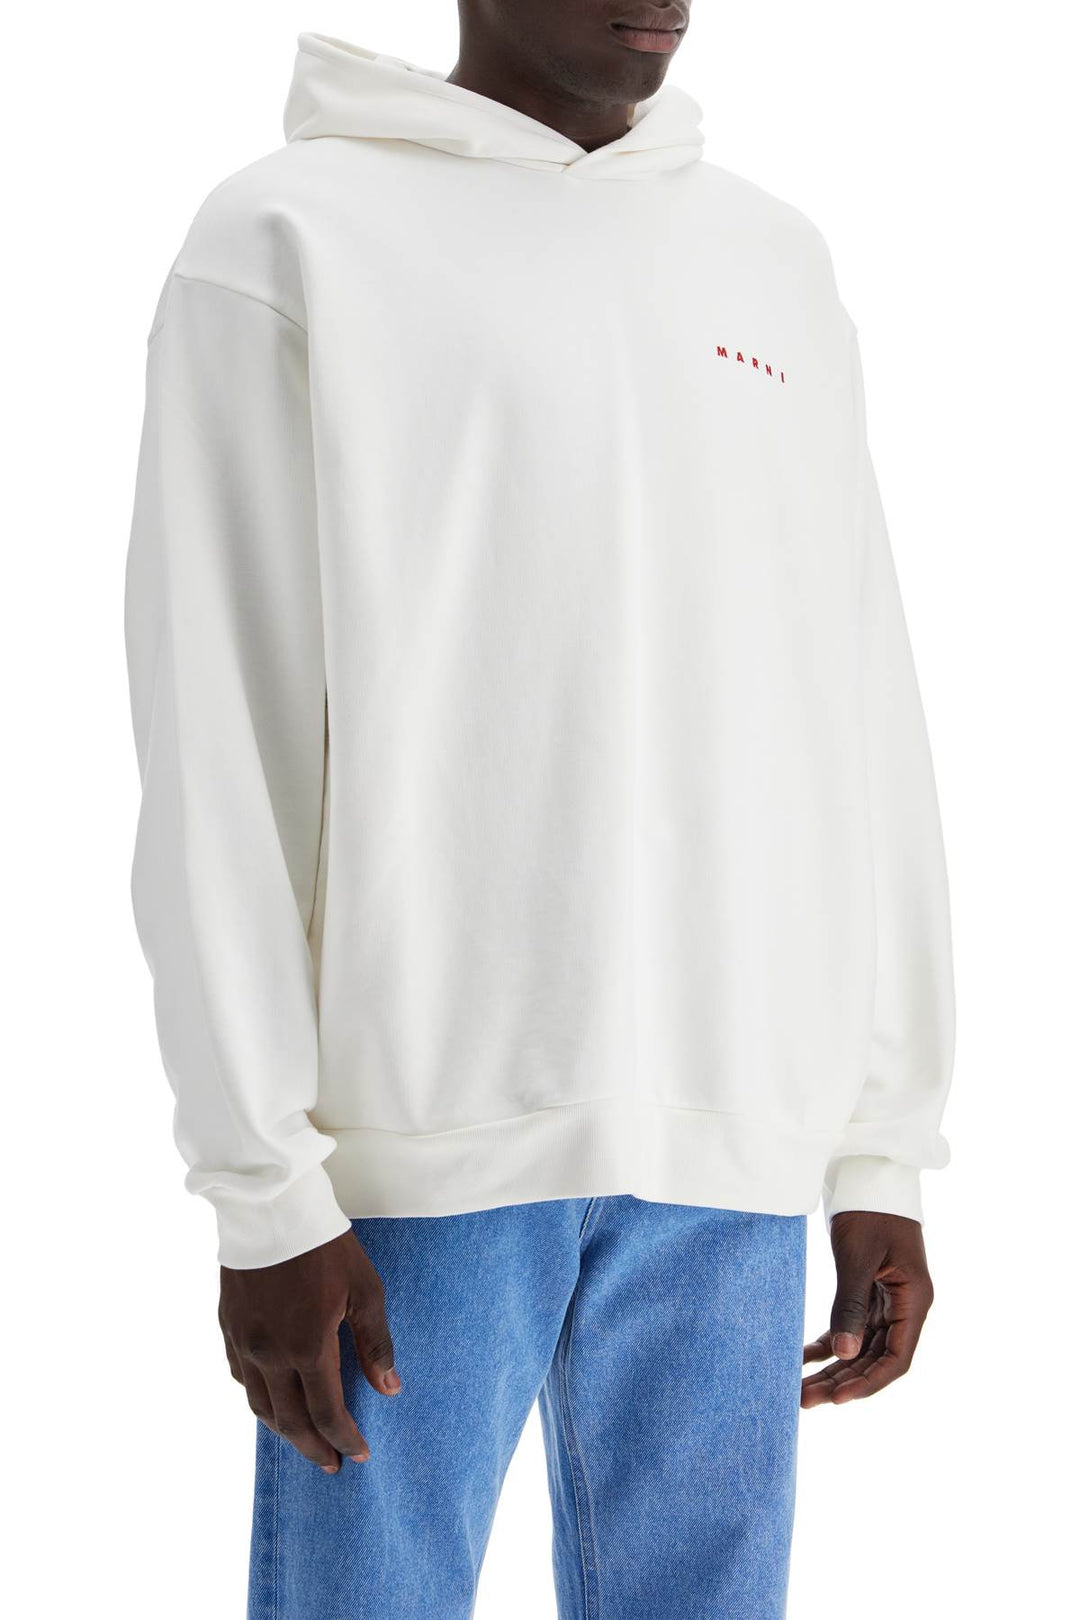 Marni Sweatshirt With Back   White